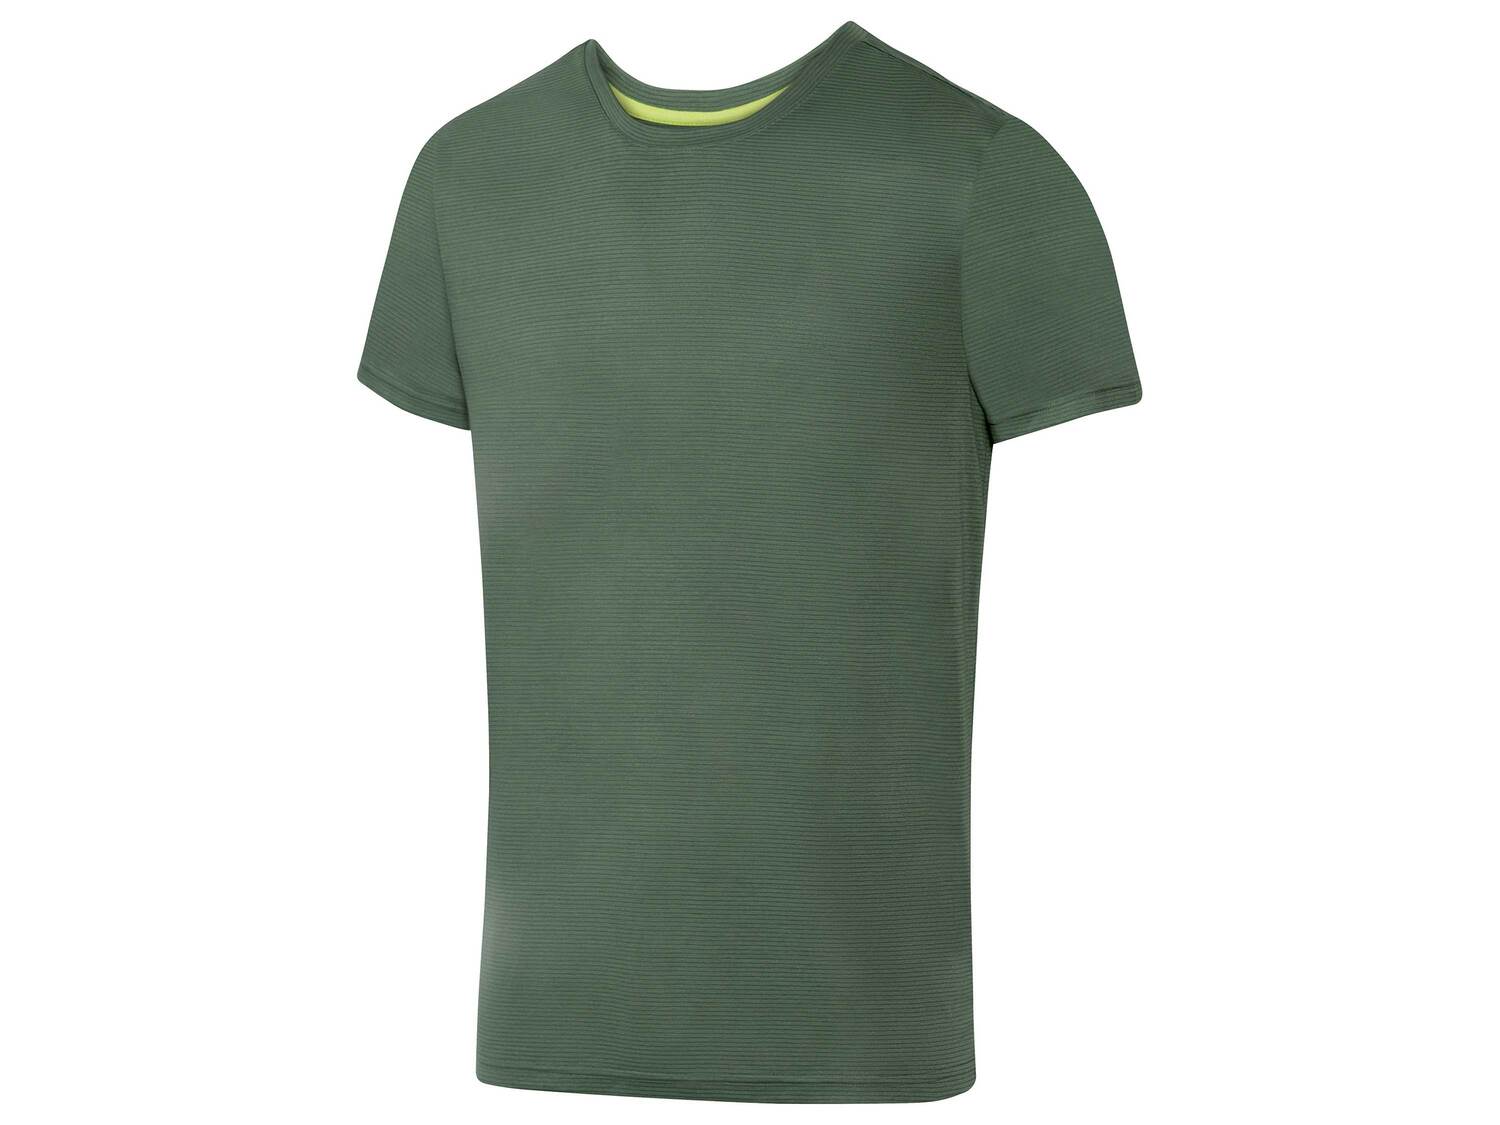 T-shirt technique homme Crivit, le prix 3.99 € 
- Du S au XL selon modèle
- ...